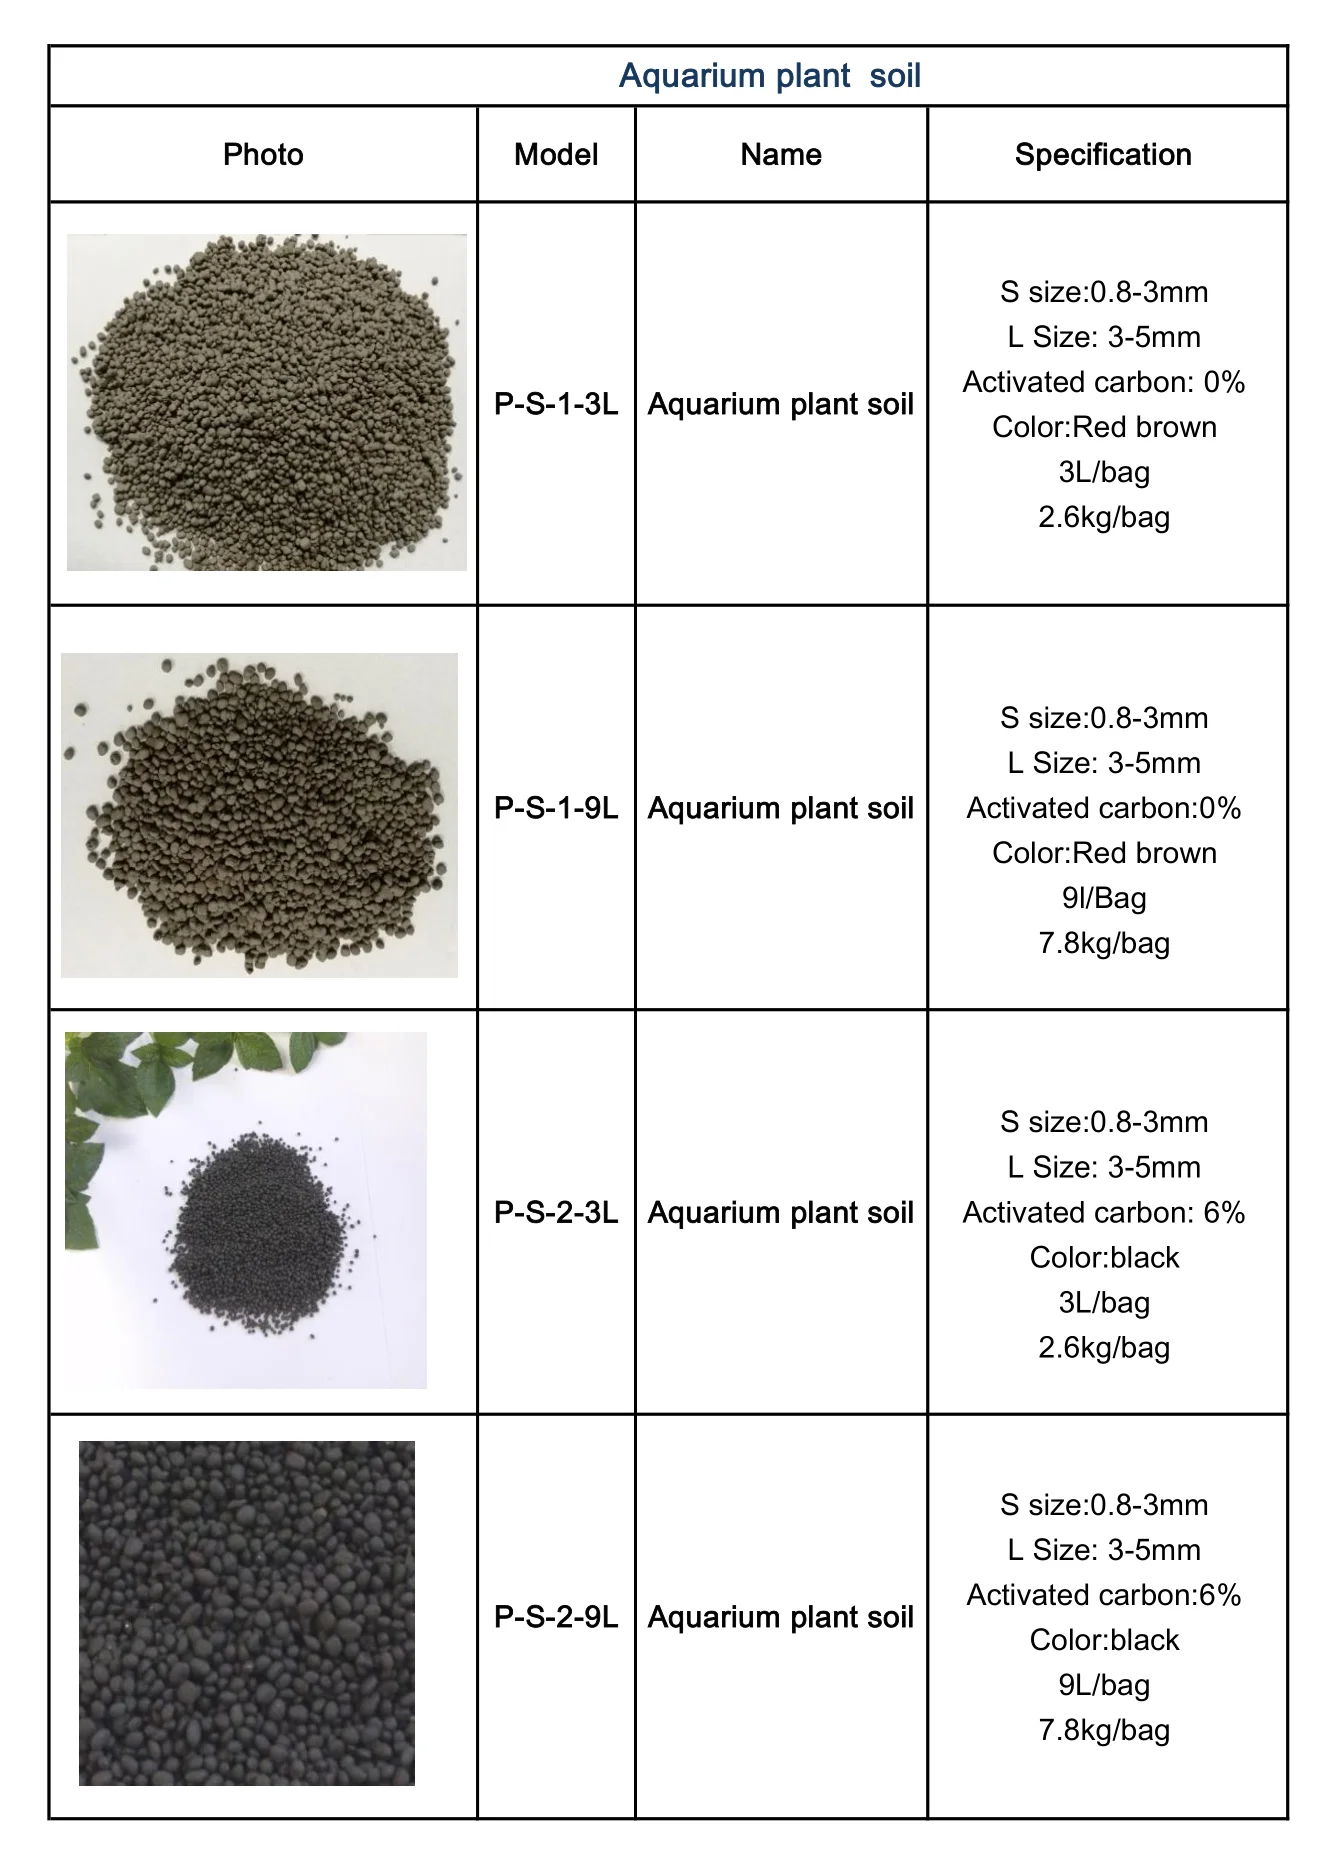 Aquarium soil for plant_1.png